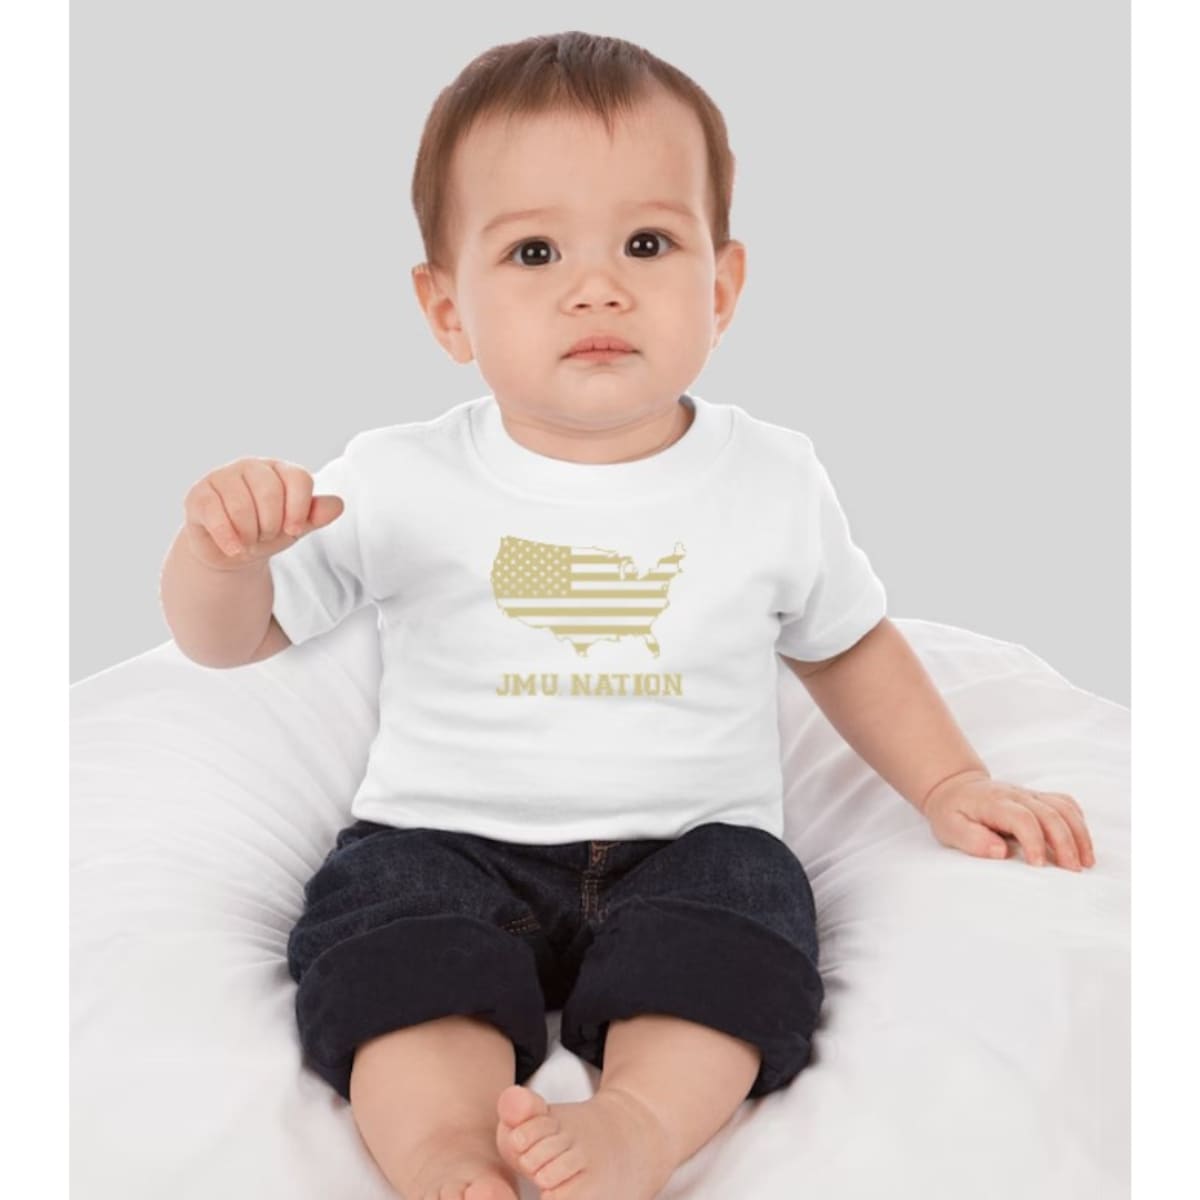 JMU Nation Infant/Child Short Sleeve - 6 MO. / WHITE W/GOLD